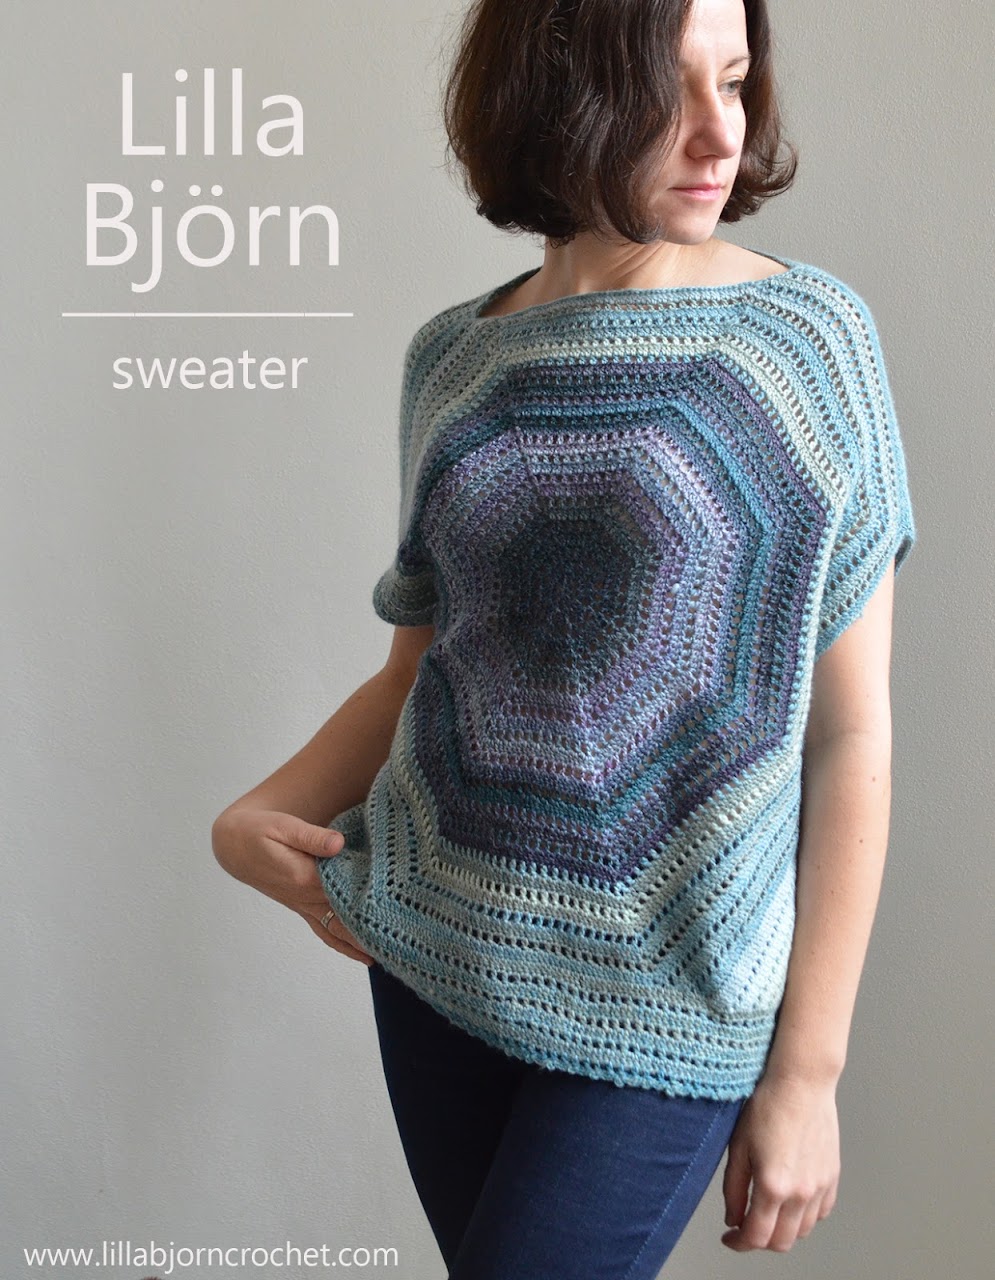 Lilla Bjorn off-shoulder sweater - free crochet pattern by www.lillabjorncrochet.com